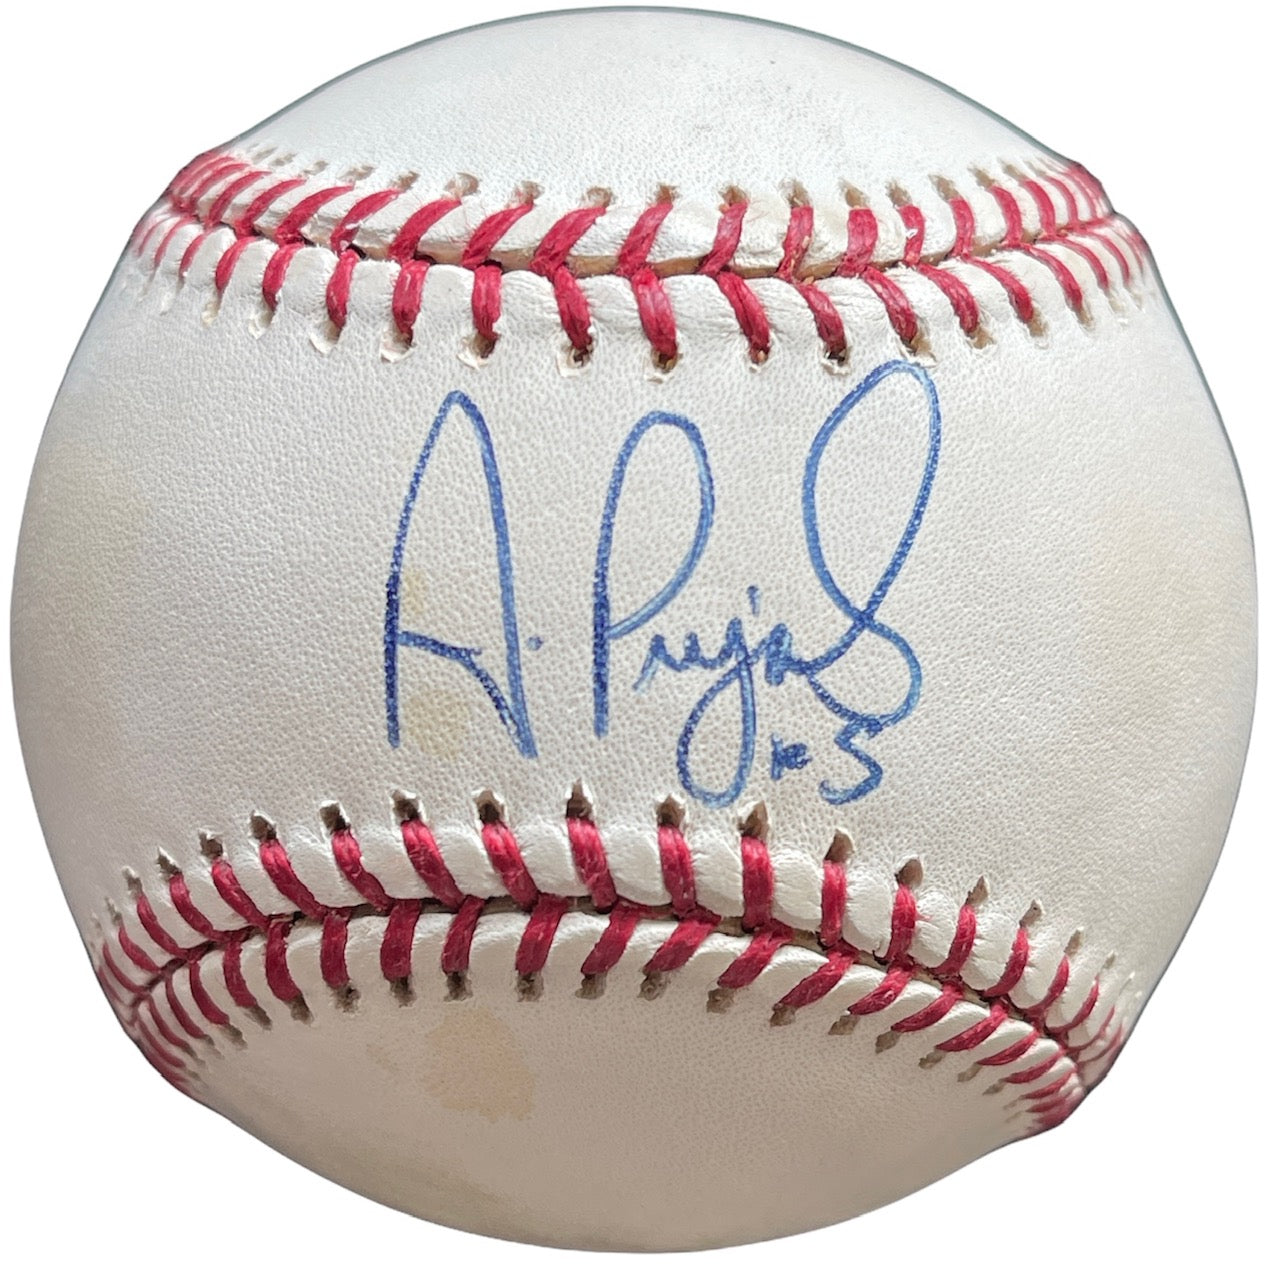 Albert Pujols Autographed Marucci 34 Signed Baseball Bat Beckett COA